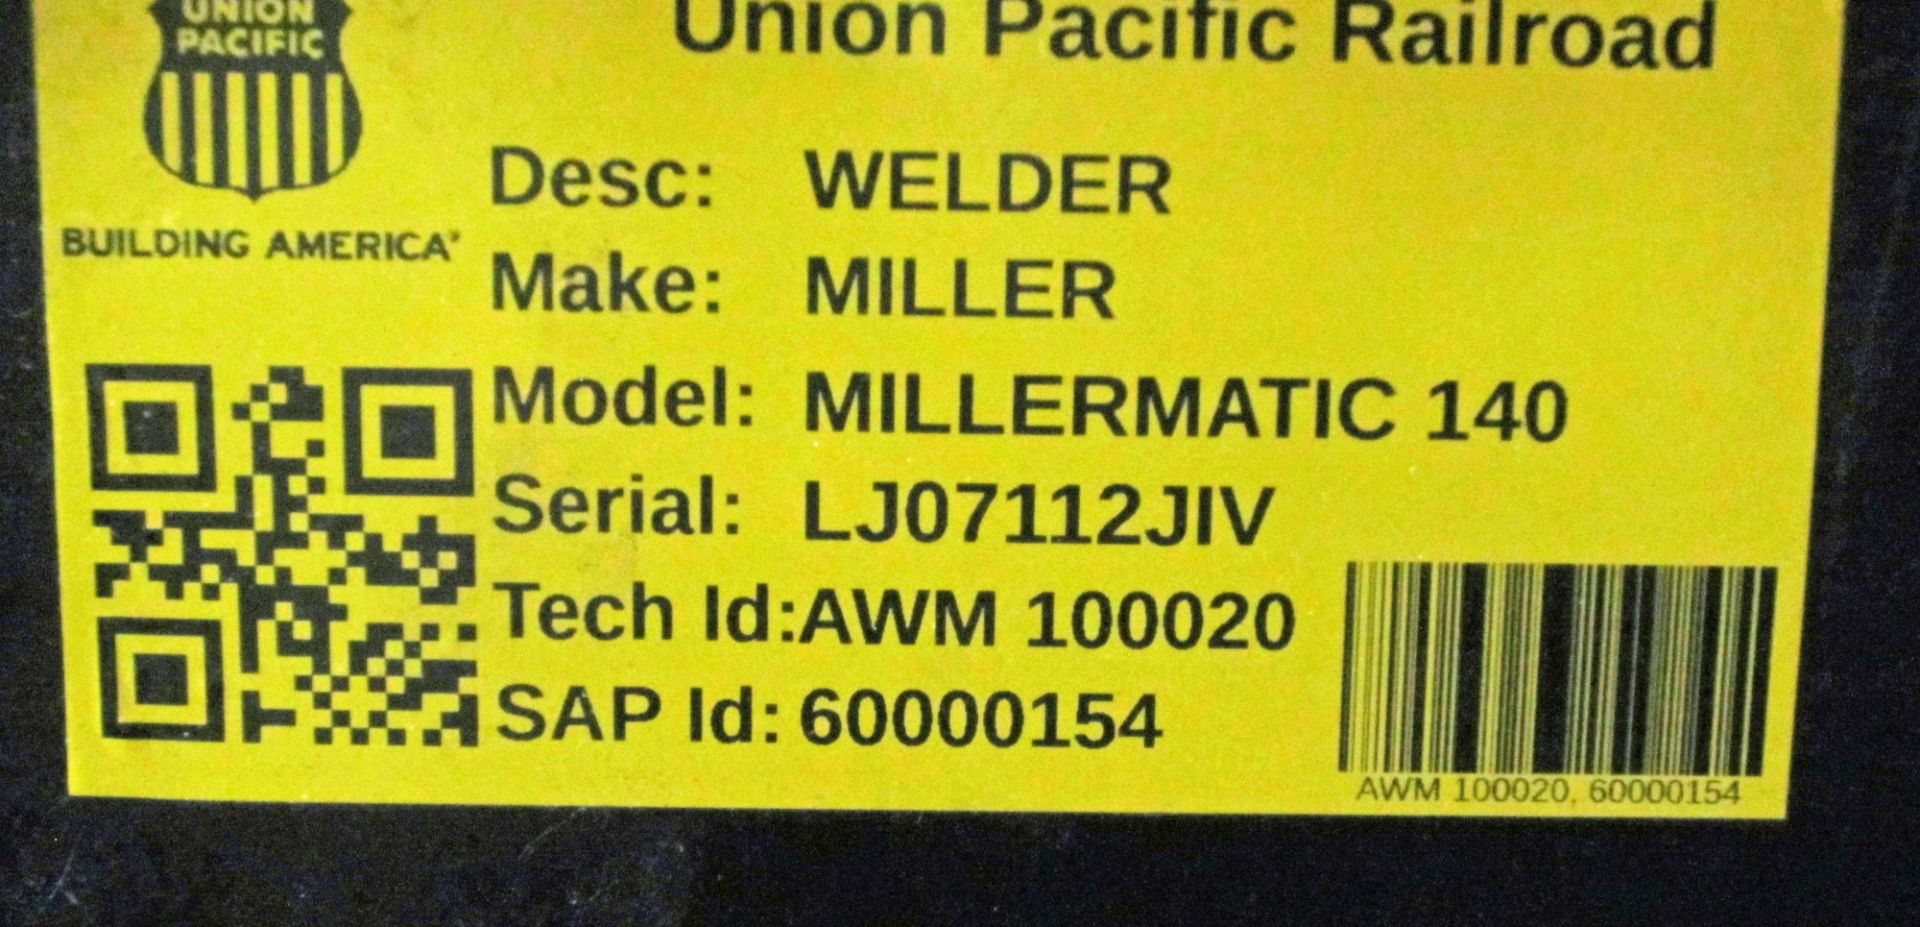 AWM100020 - MILLER MILLERMATIC 140 WELDER - Image 2 of 2